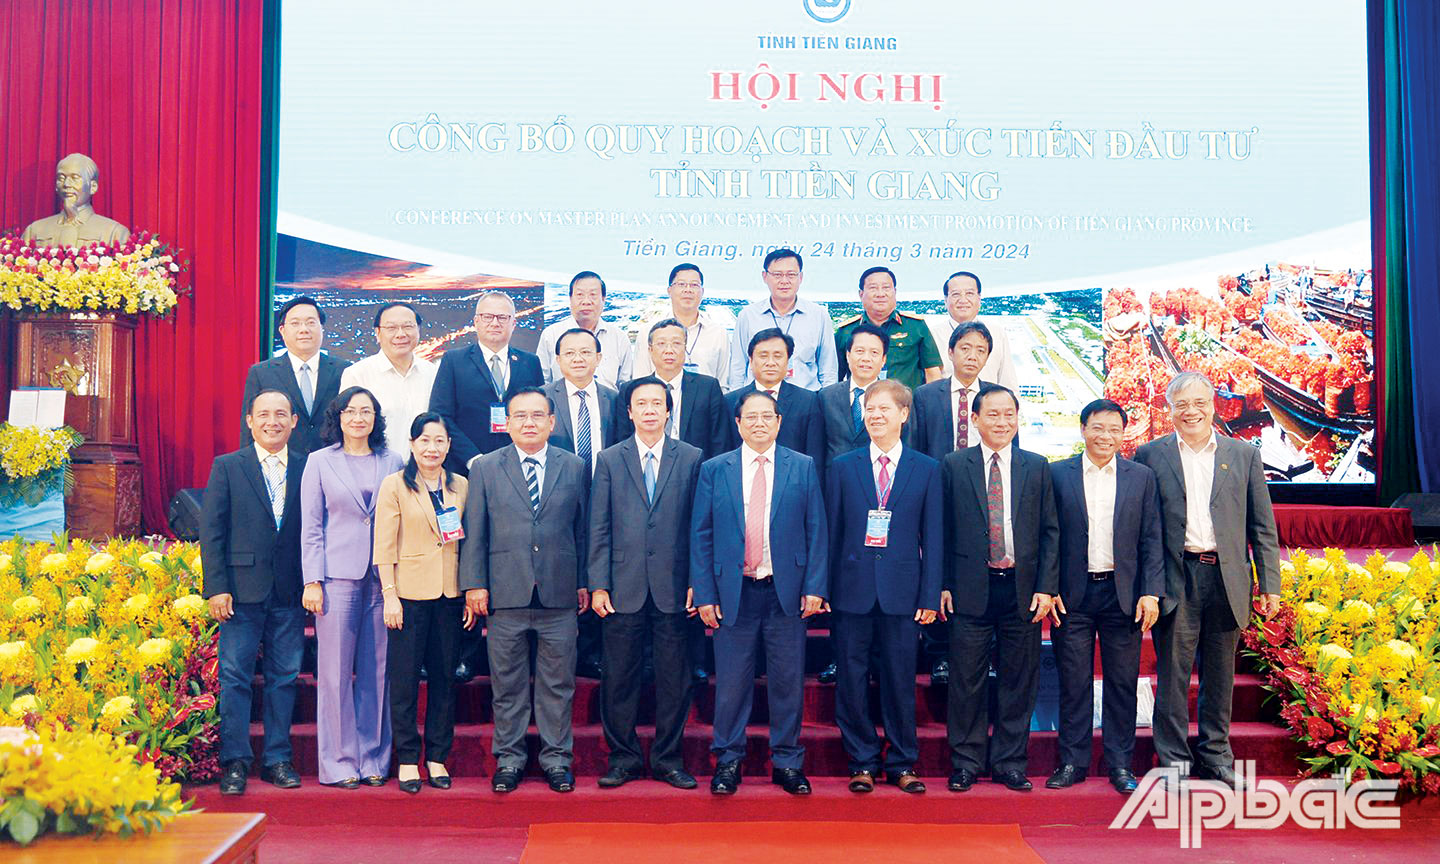 Thủ tướng Phạm Minh Chính chụp ảnh lưu niệm với lãnh đạo tỉnh Tiền Giang tại Hội nghị công bố Quy hoạch và Xúc tiến đầu tư tỉnh Tiền Giang.